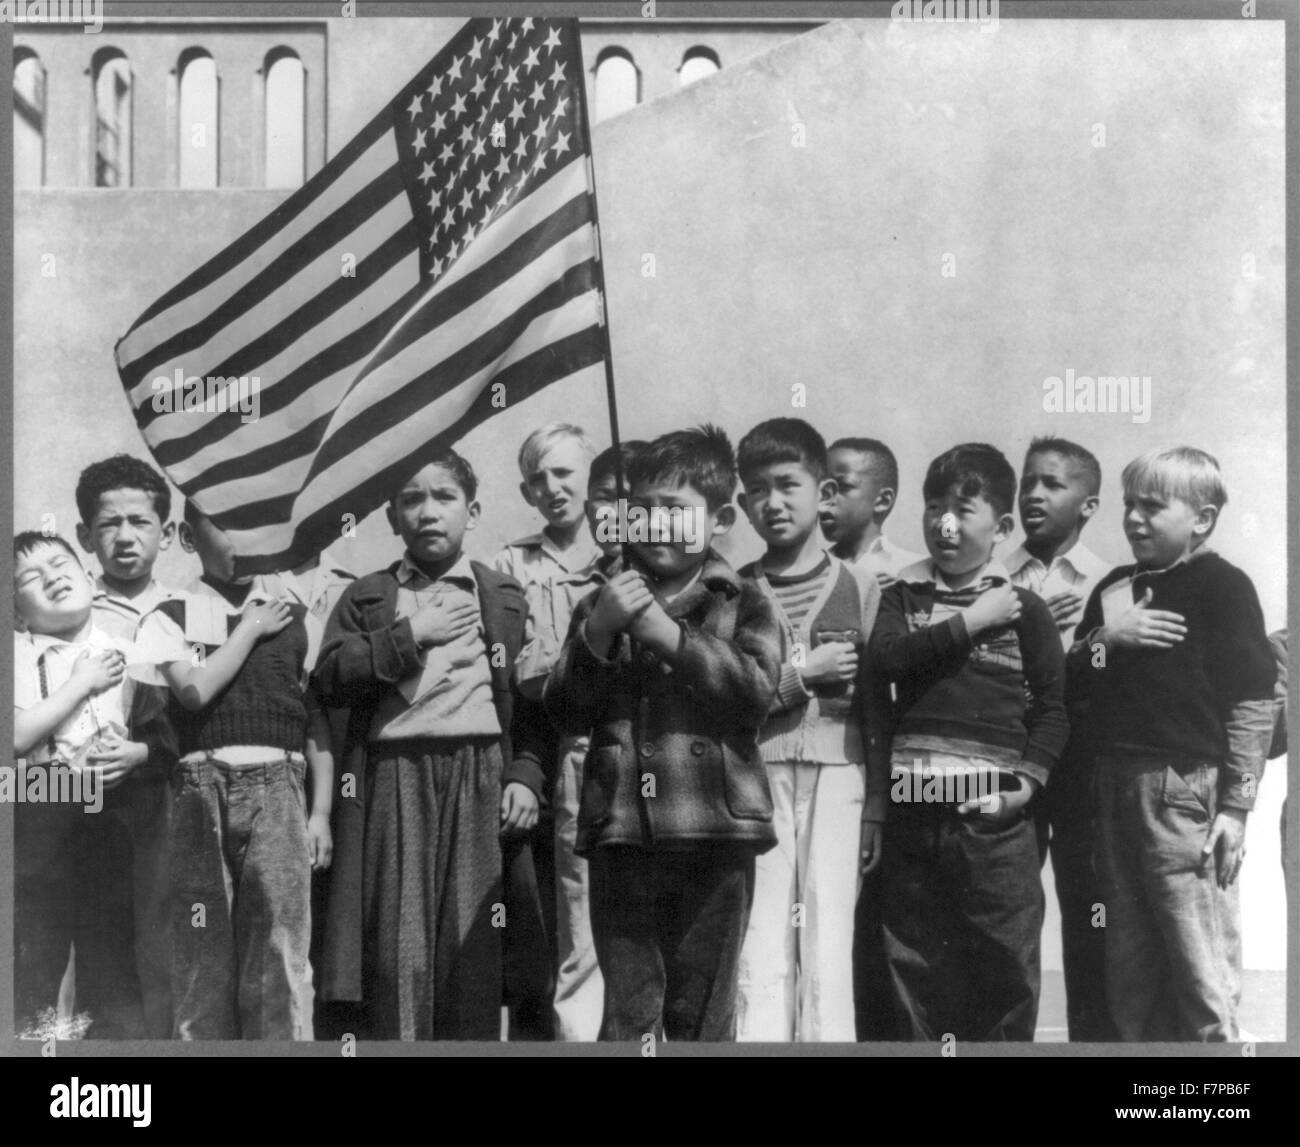 Impression photographique - San Francisco, Californie, avril 1942. Les enfants à l'école publique de Weill pour le soi-disant règlement international et notamment de nombreux Américains, saluant le drapeau. Ils comprennent les personnes évacuées d'origine japonaise qui seront logés dans les centres d'autorité à la réinstallation de la guerre pour la durée. Banque D'Images